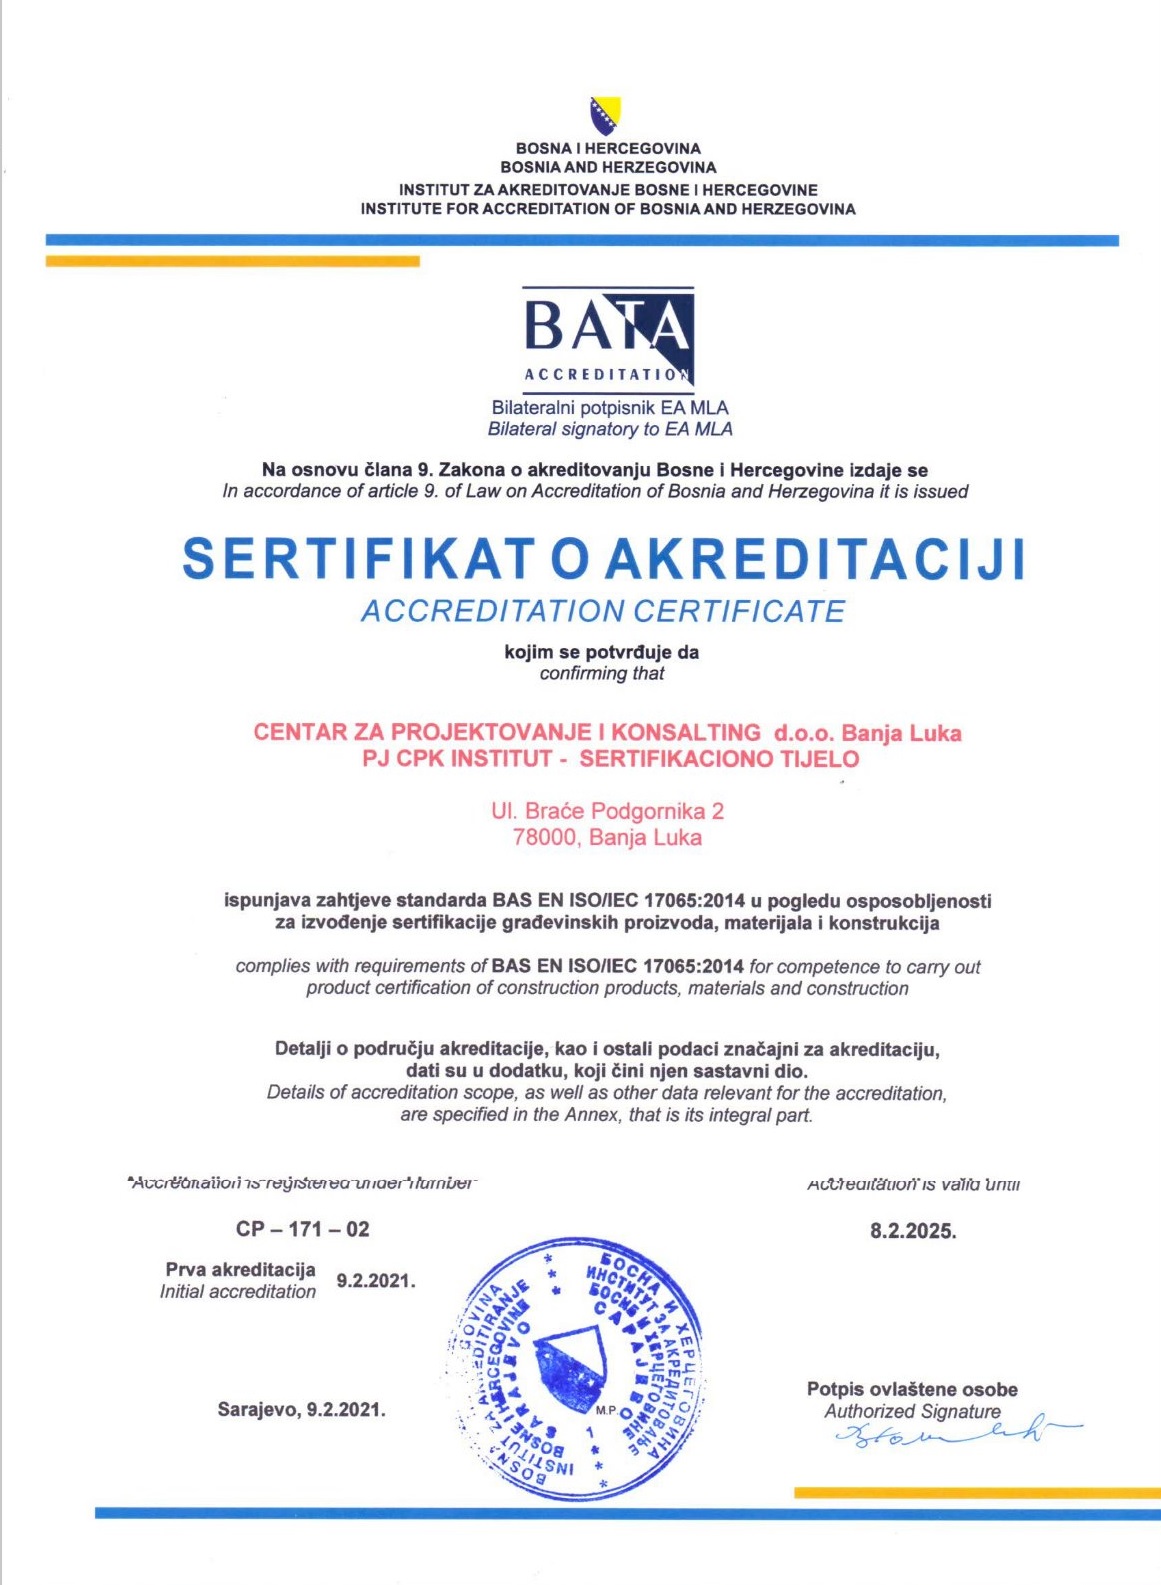 Sertifikaciono tijelo CPK D.O.O. je prvo akreditovano sertifikaciono tijelo u Republici Srpskoj